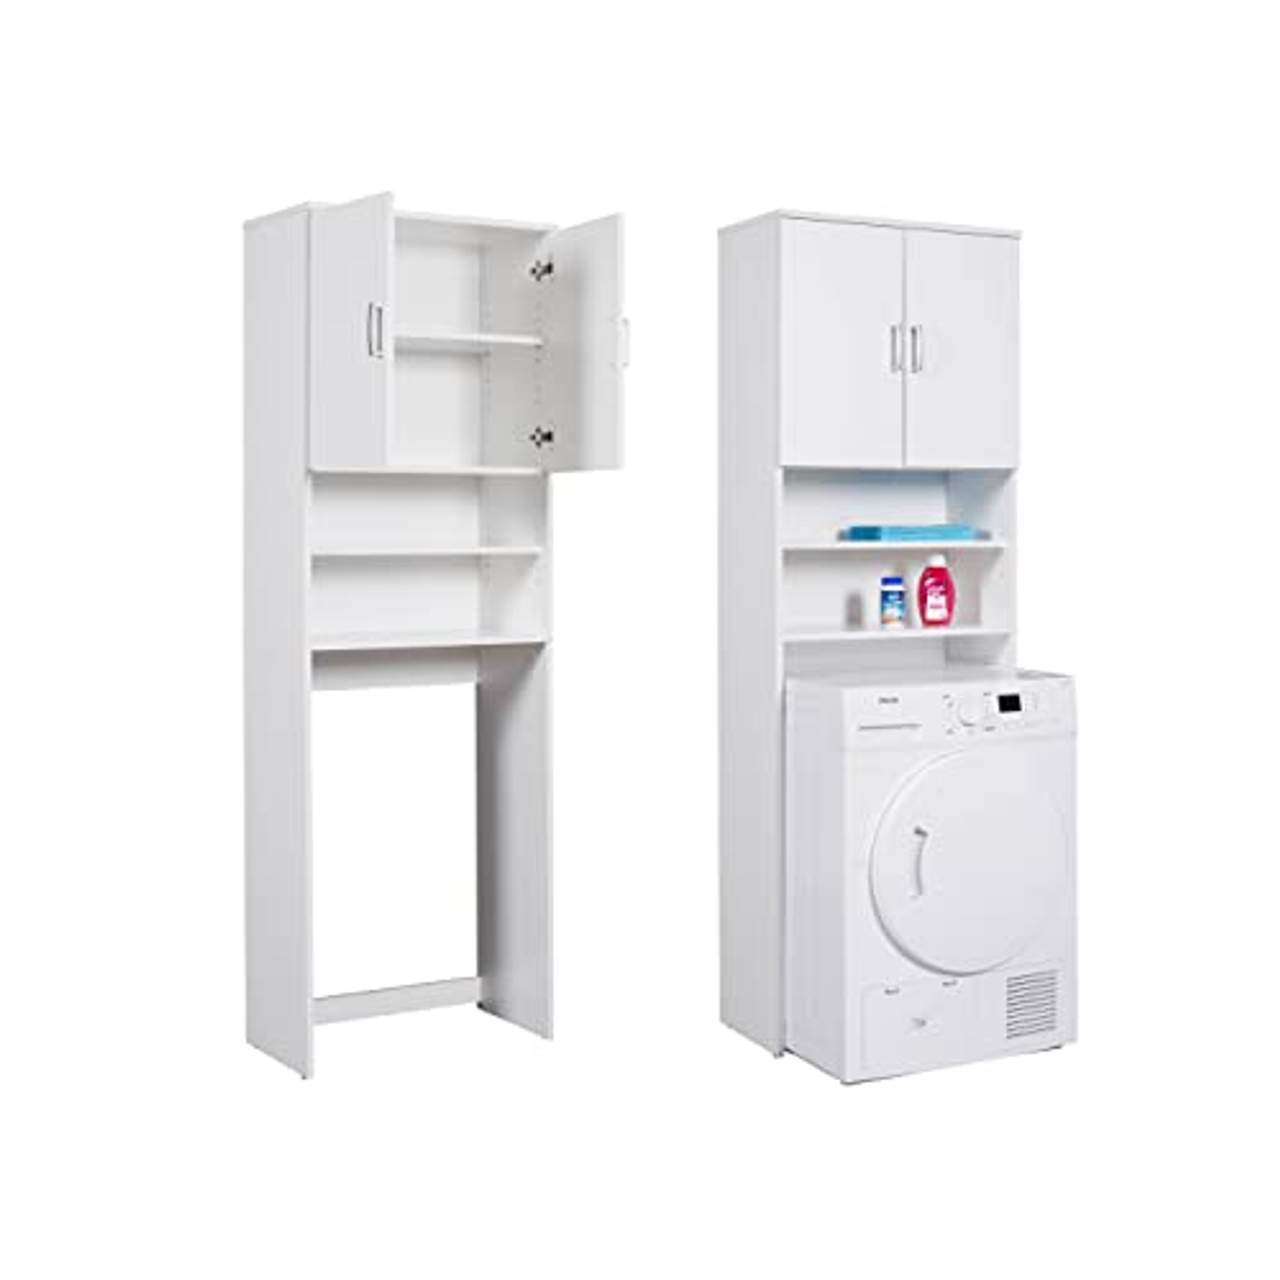 Inter Link Waschmaschinenüberbau mit 2 Türen und 2 Regale in Weiss